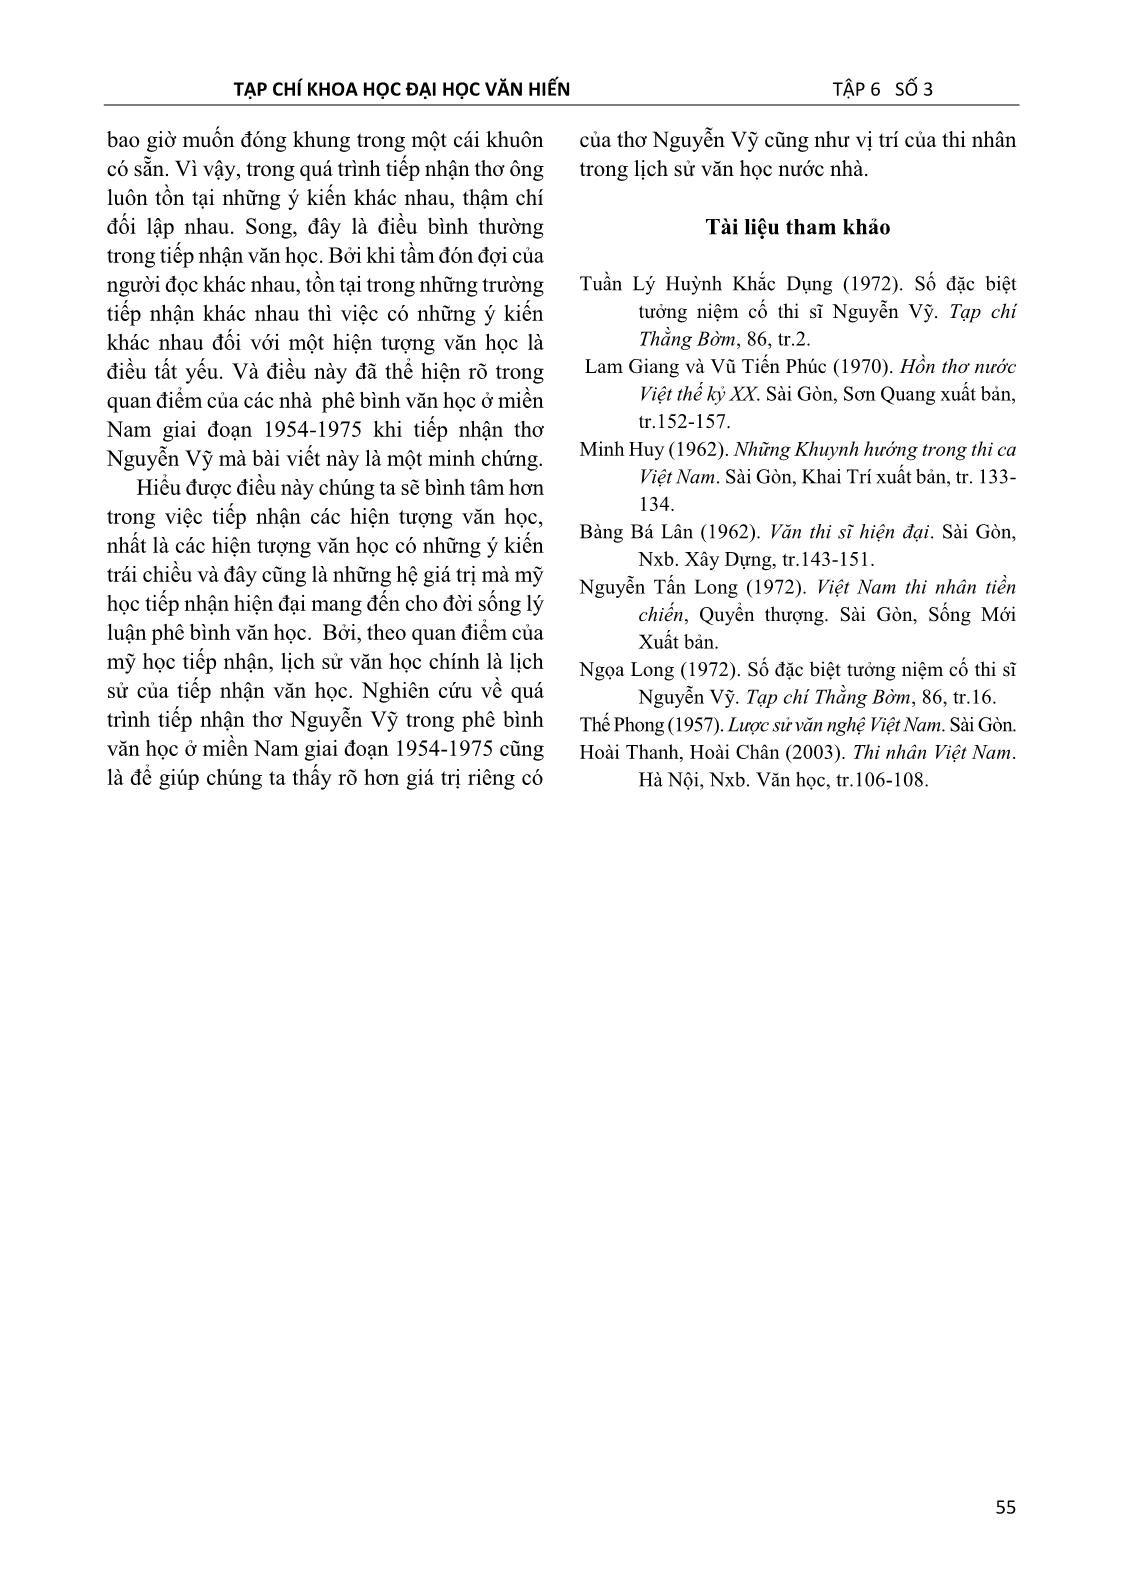 Thơ Nguyễn Vỹ trong tiếp nhận của phê bình văn học ở miền Nam giai đoạn 1954 – 1975 trang 7